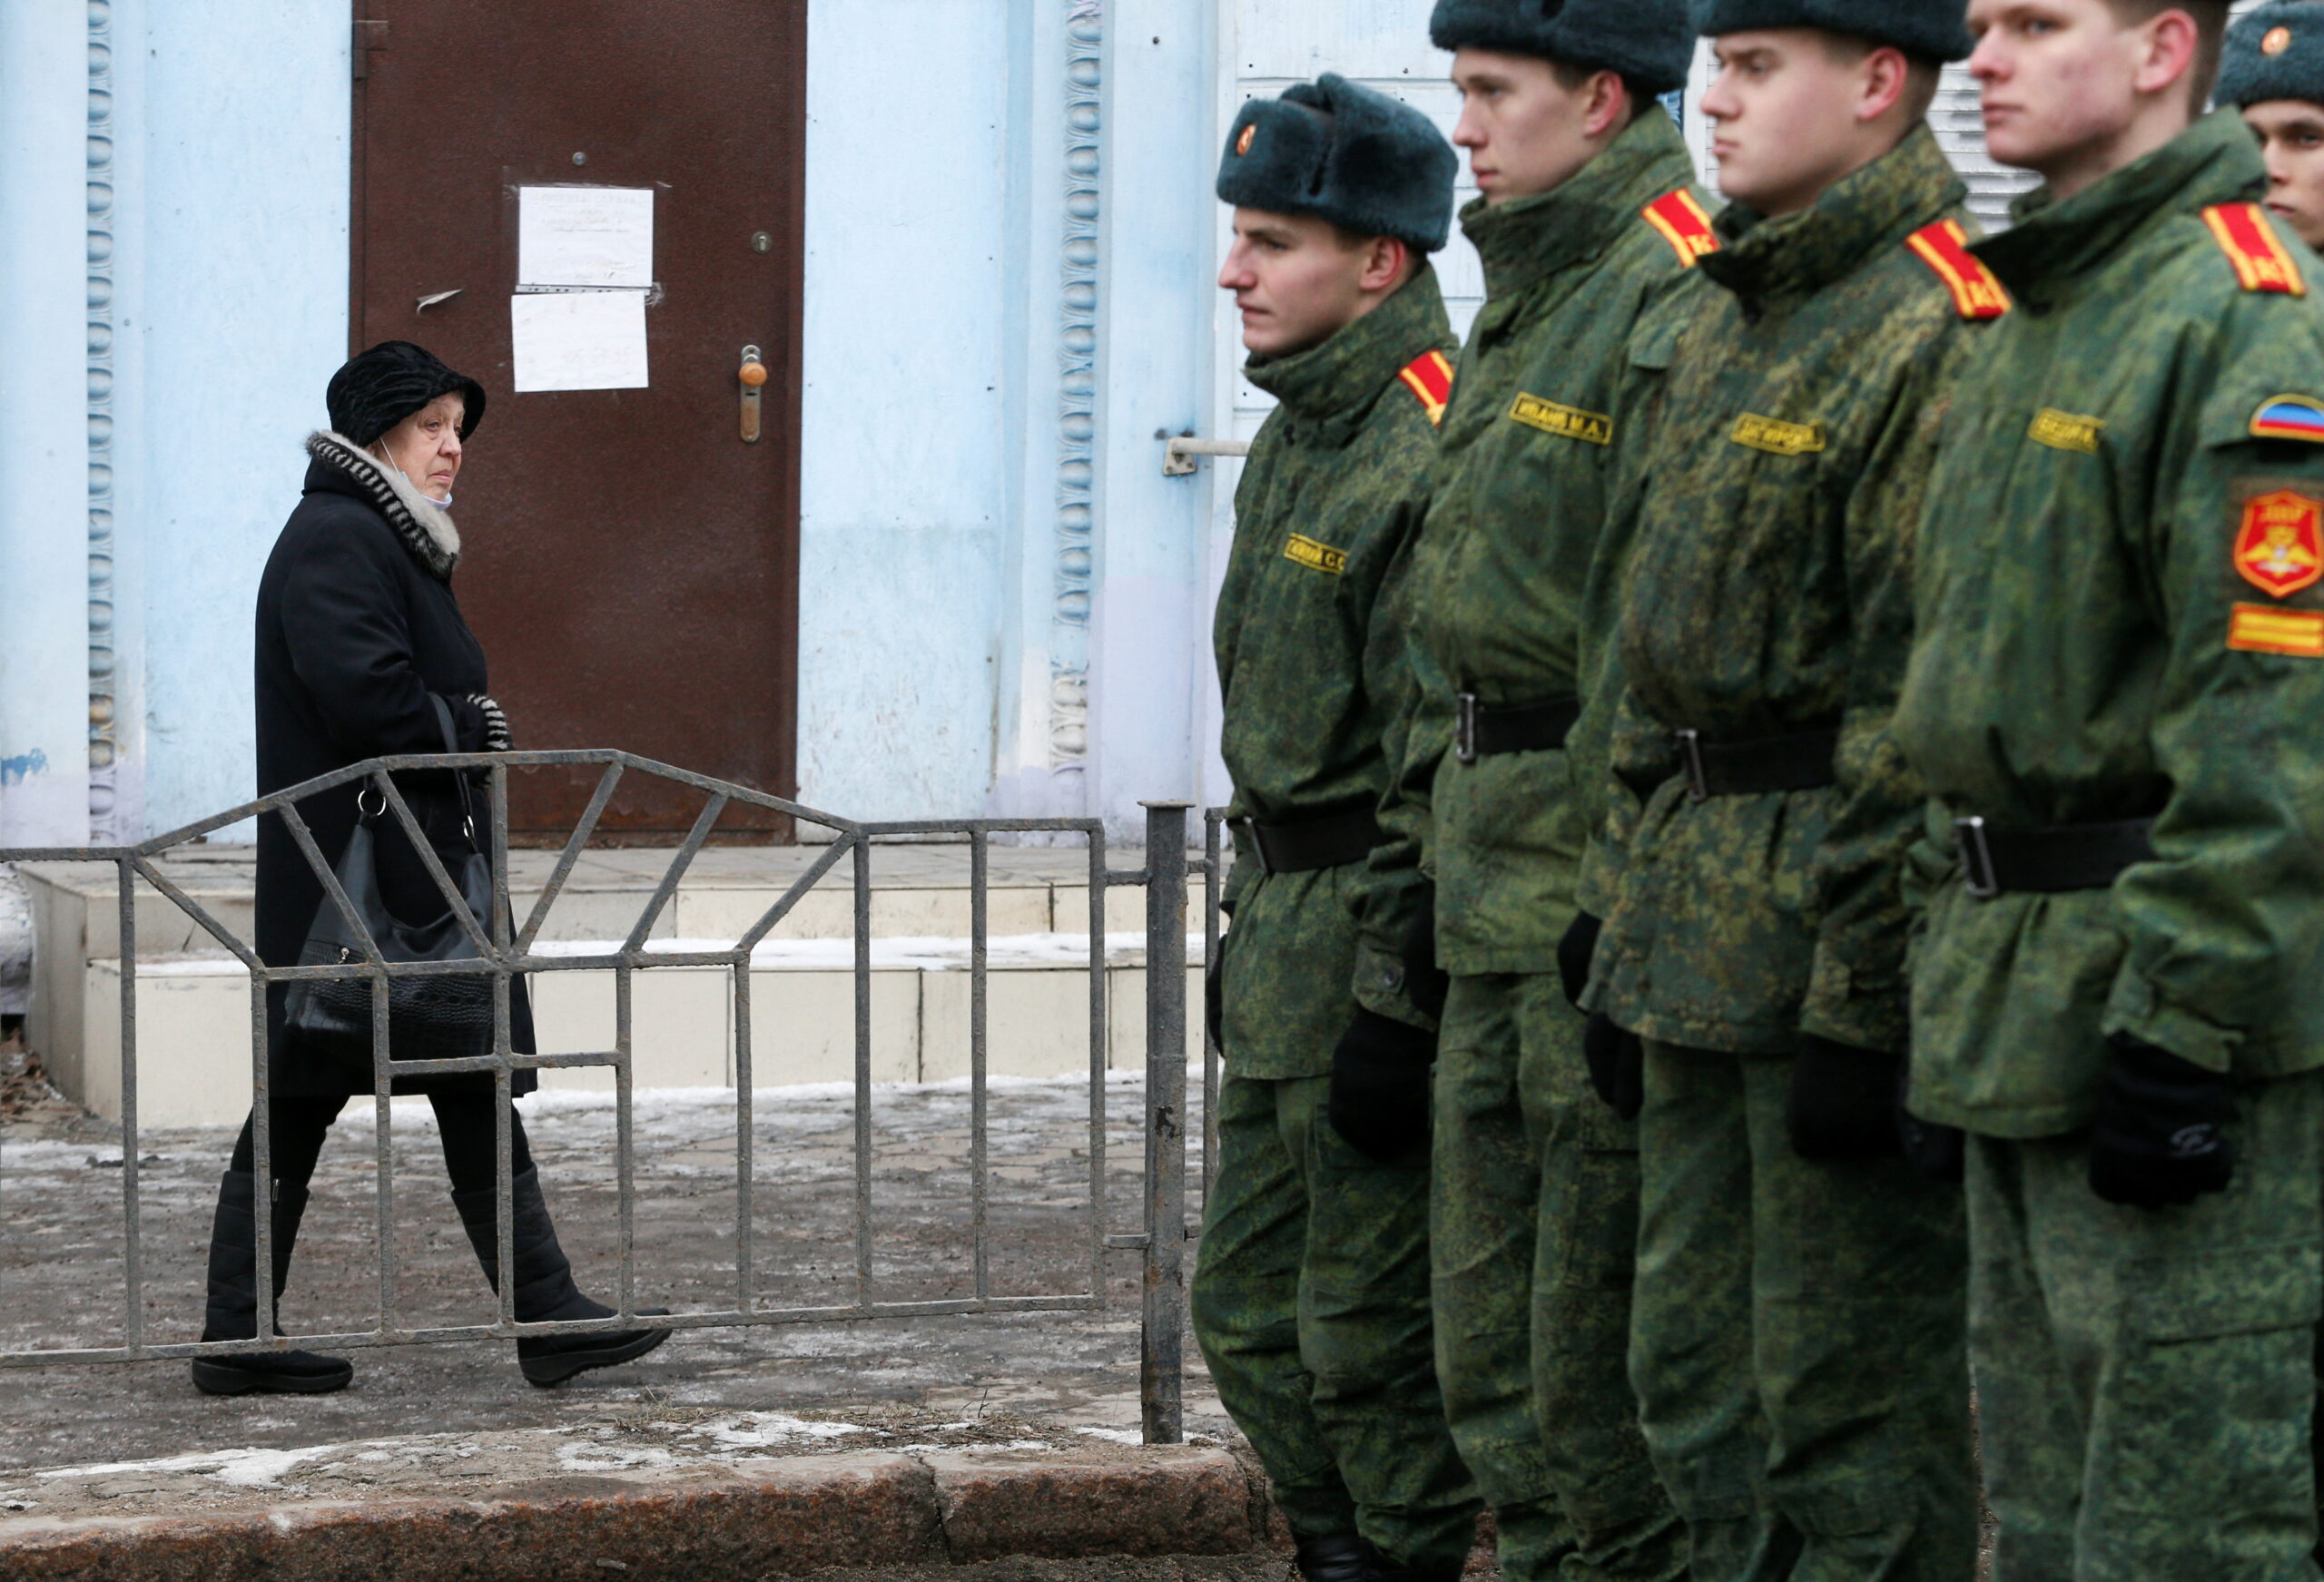 รัสเซีย-ยูเครน: สรุปที่มาความขัดแย้ง รวมทุกเรื่องที่ควรรู้